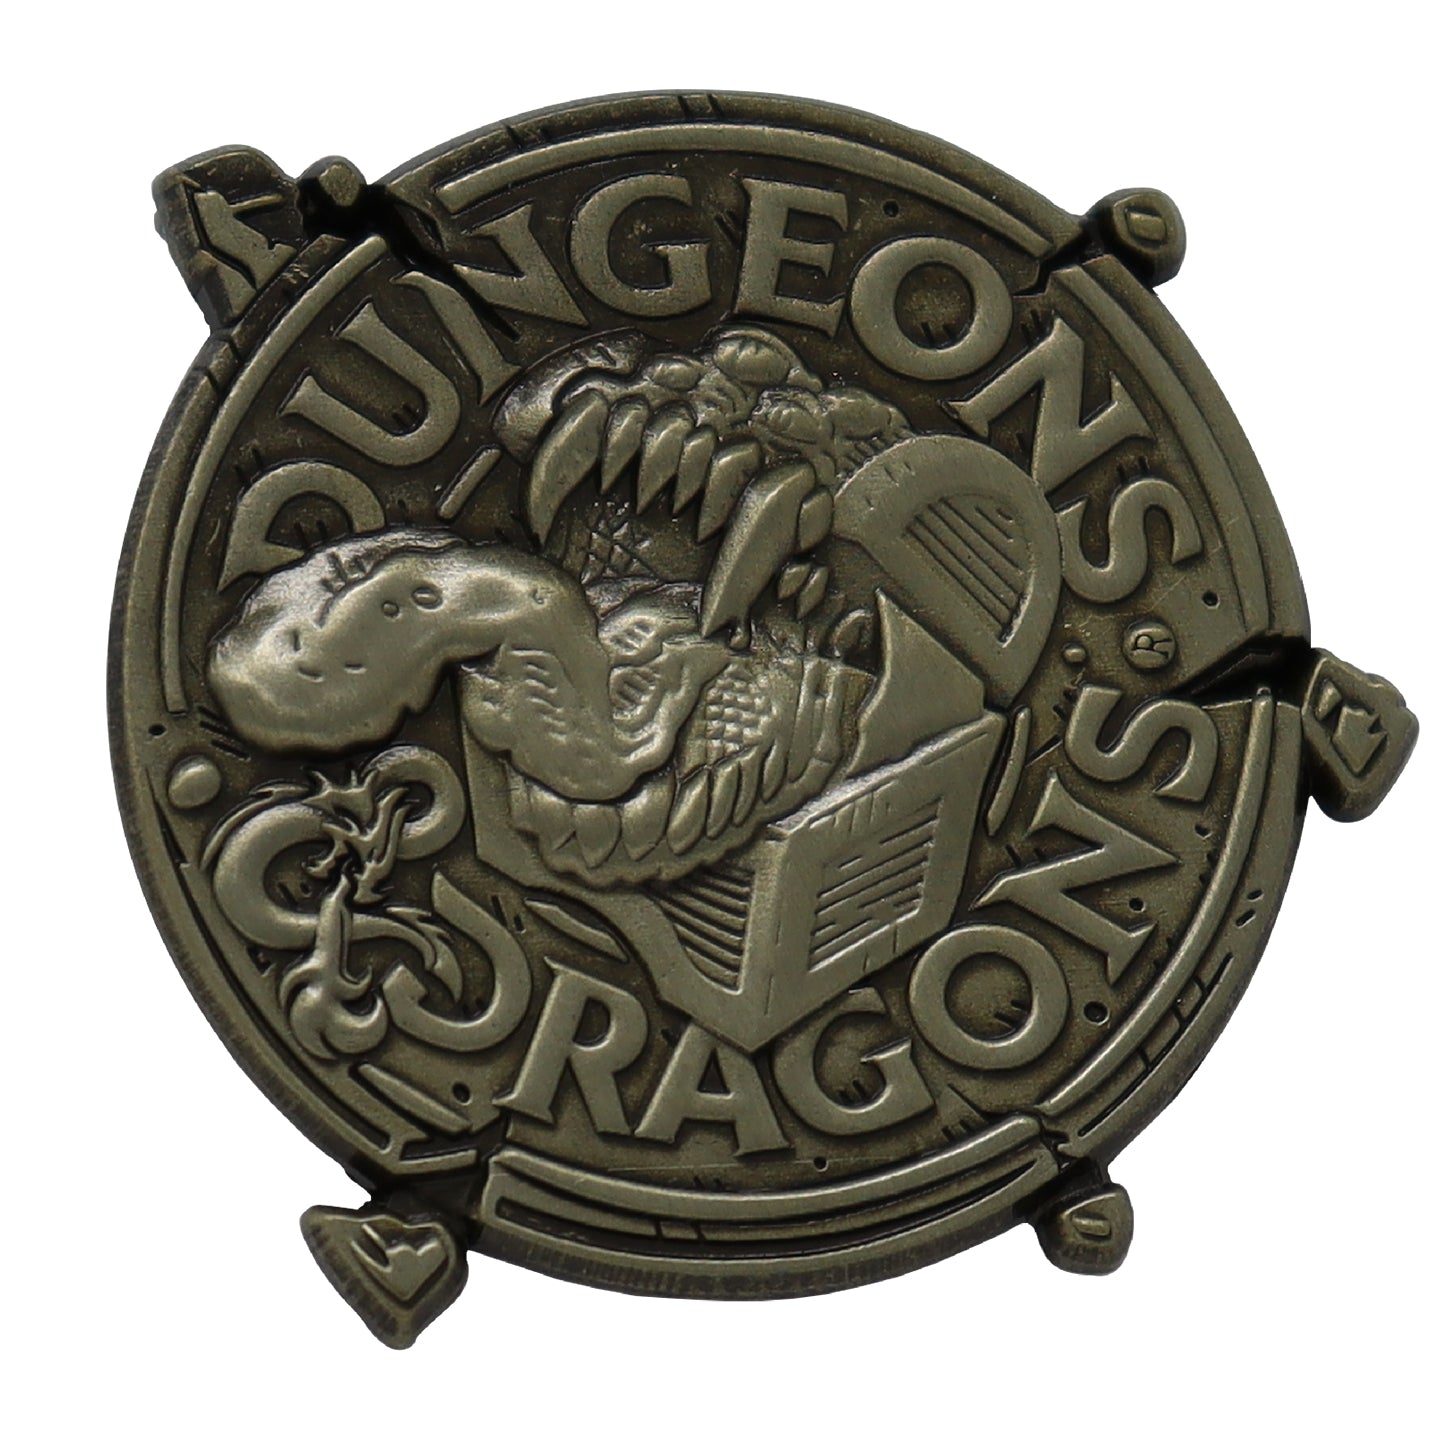 Dungeons & Dragons Pin Badge